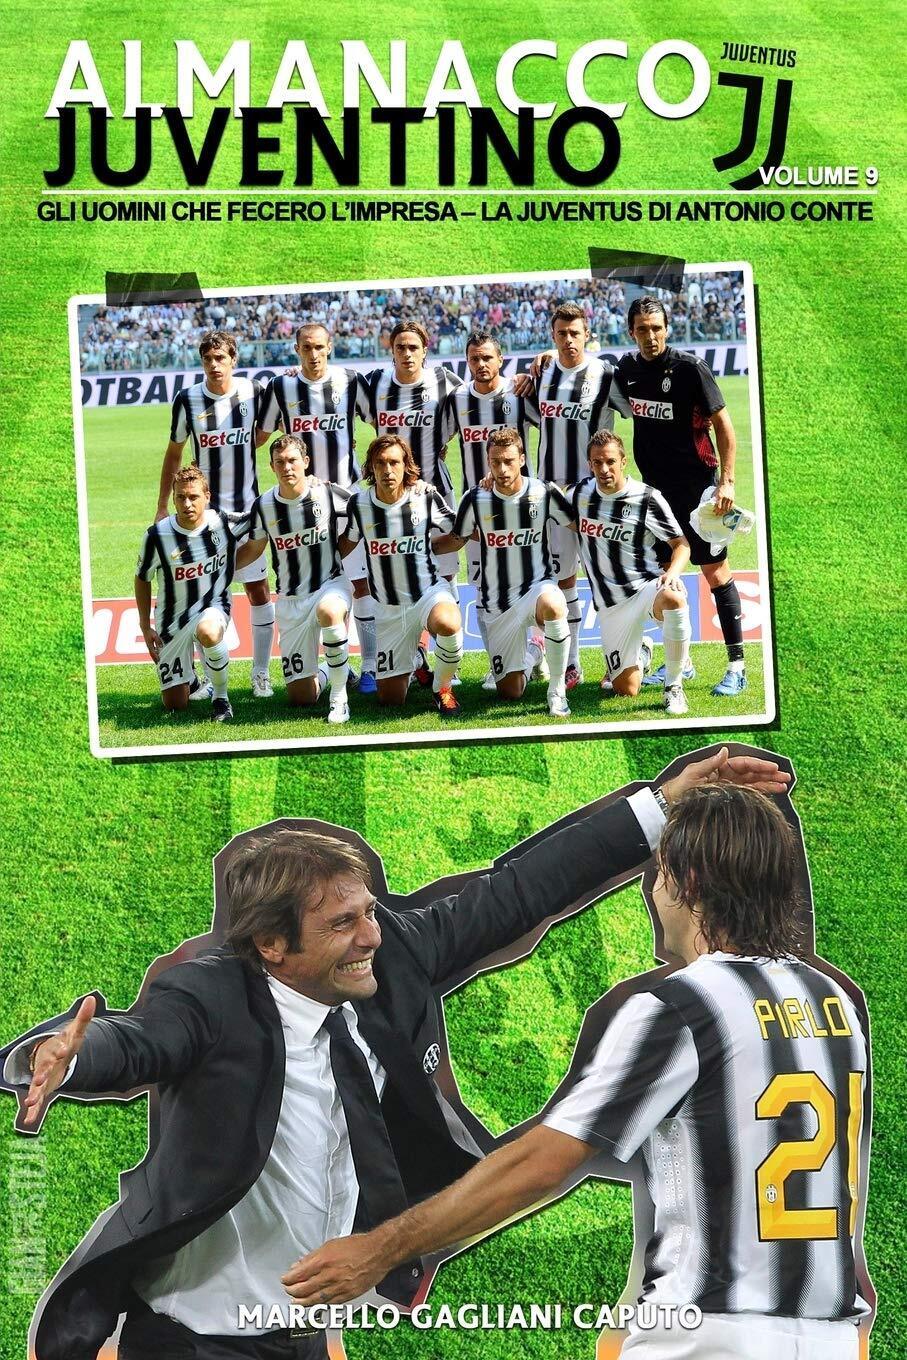 Gli uomini che fecero l'impresa: La Juventus di Antonio Conte: Volume 9 - 2016